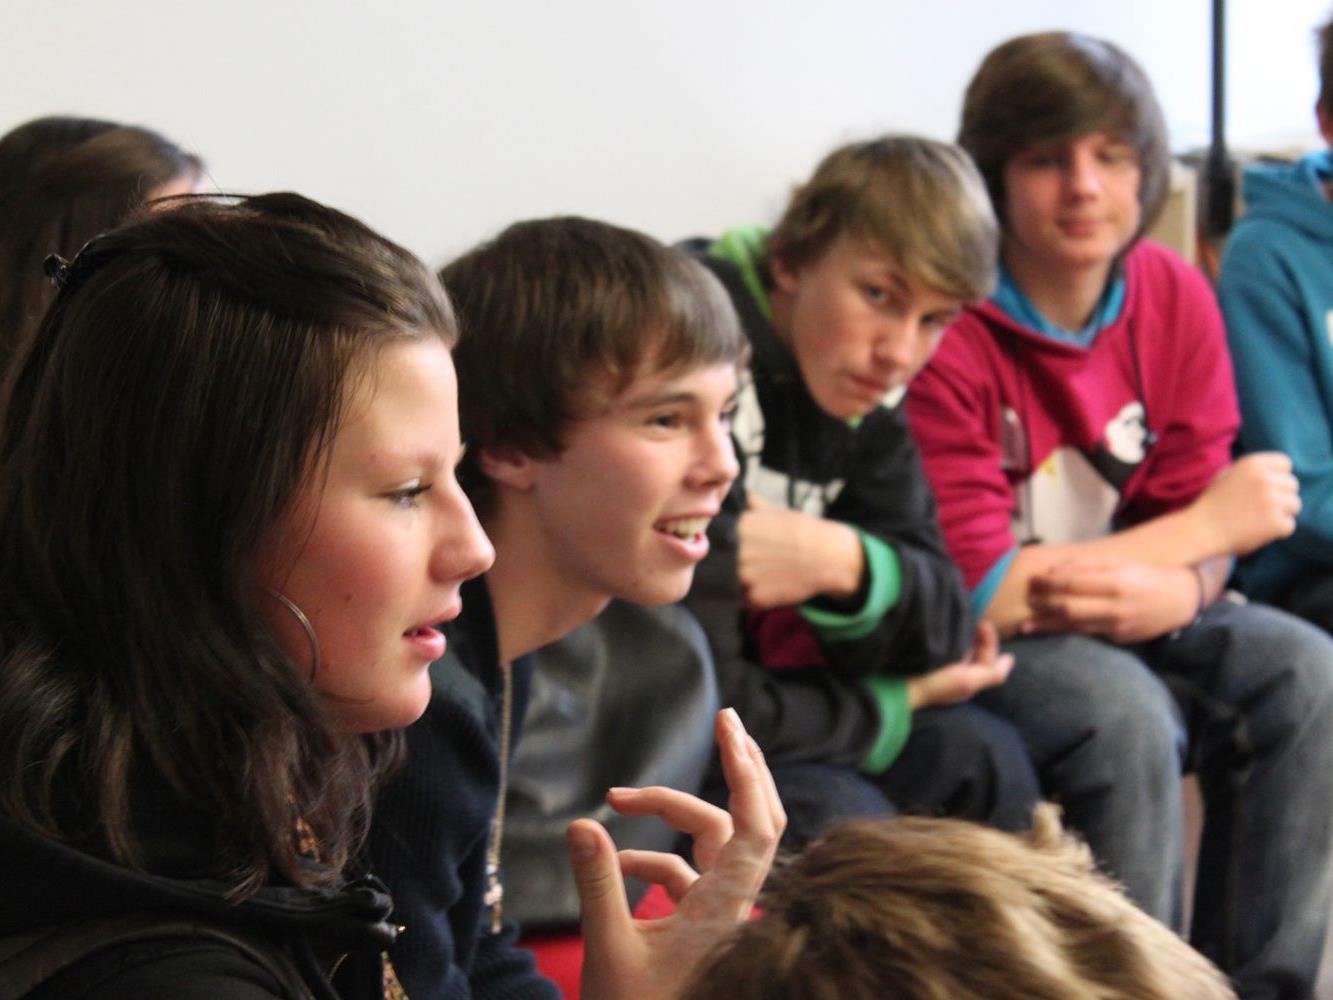 Der nächste FrageRaum Politik findet am 10. Dezember in Bregenz (shed 8) statt. Die Jugendlichen diskutierten mit den PolitikerInnen über aktuelle Themen.